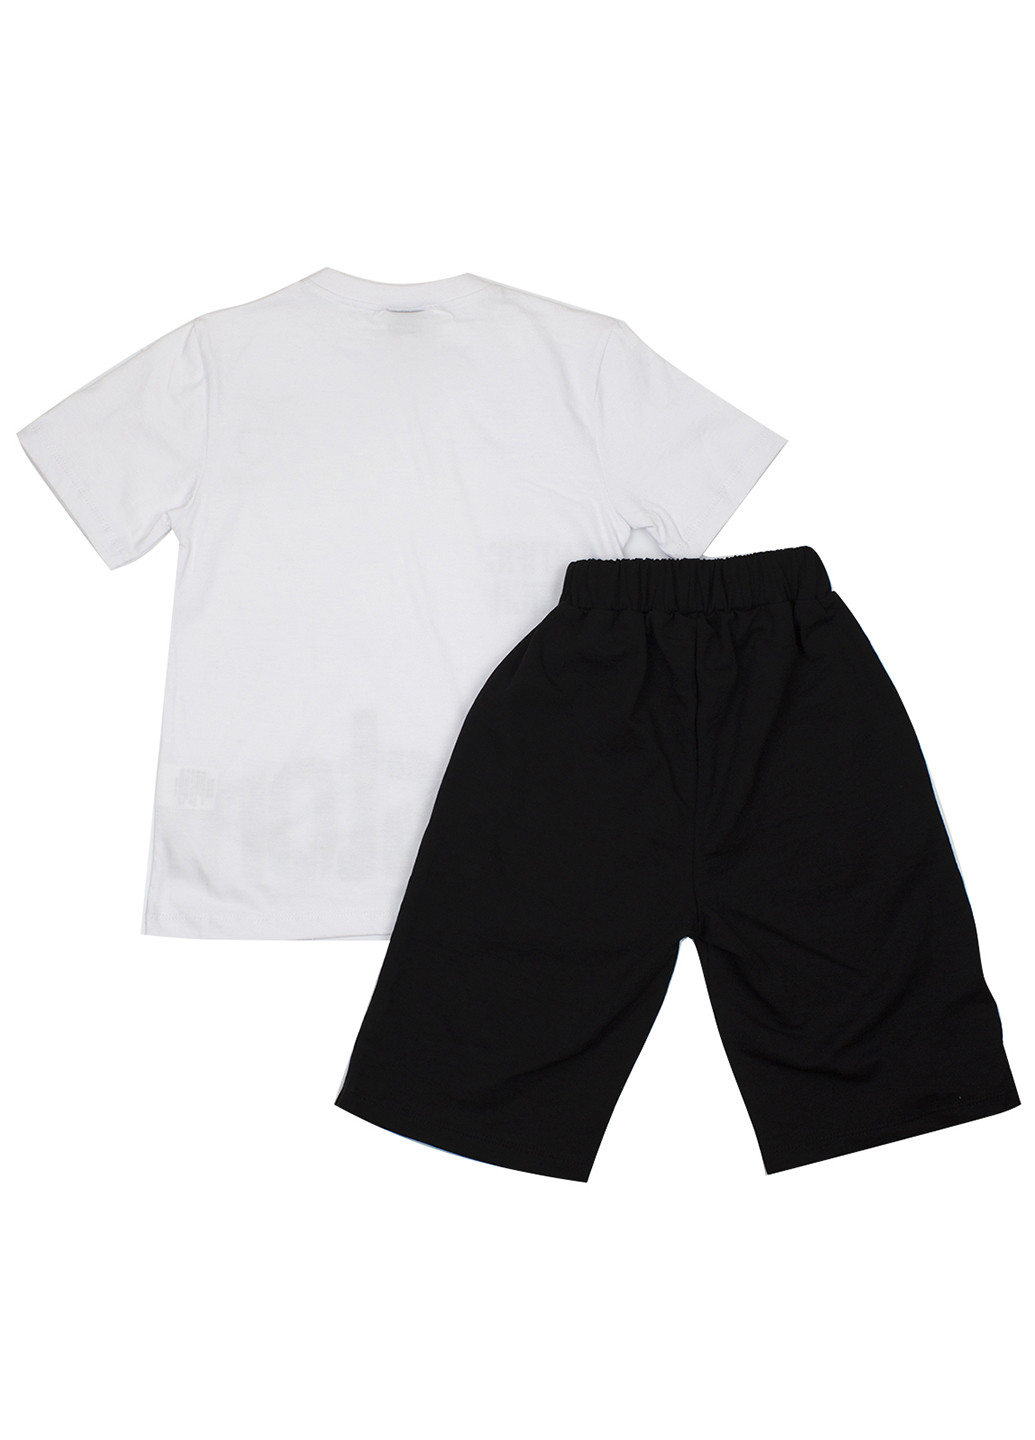 Черно-белый летний комплект (футболка, шорты) GMC